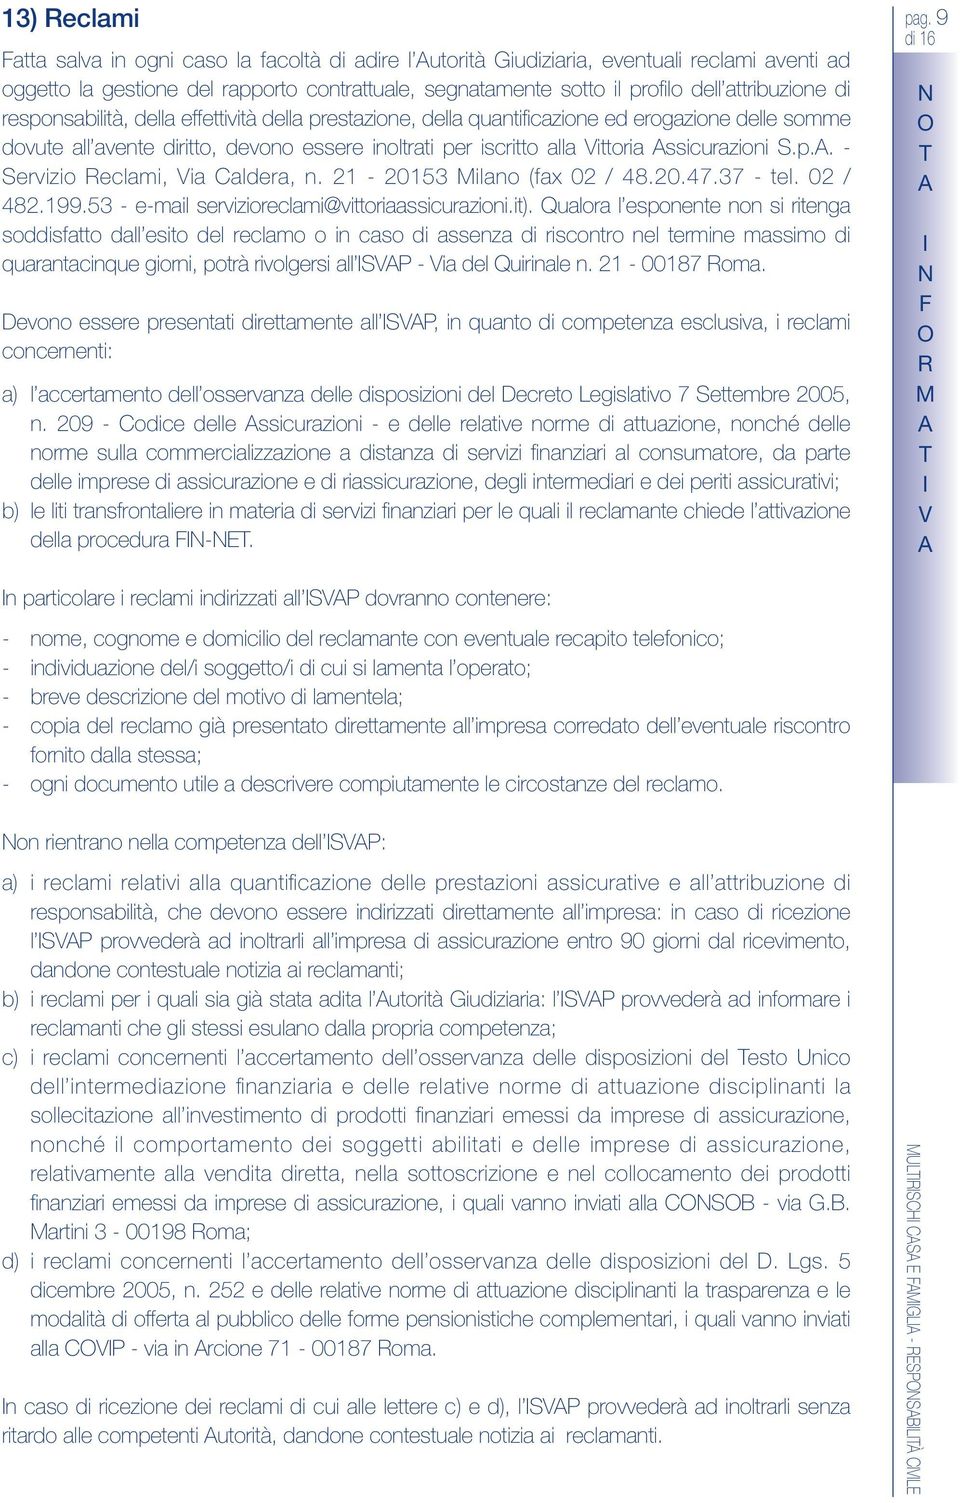 ssicurazioni.p.. - ervizio eclami, ia Caldera, n. 21-20153 Milano (fax 02 / 48.20.47.37 - tel. 02 / 482.199.53 - e-mail servizioreclami@vittoriaassicurazioni.it).